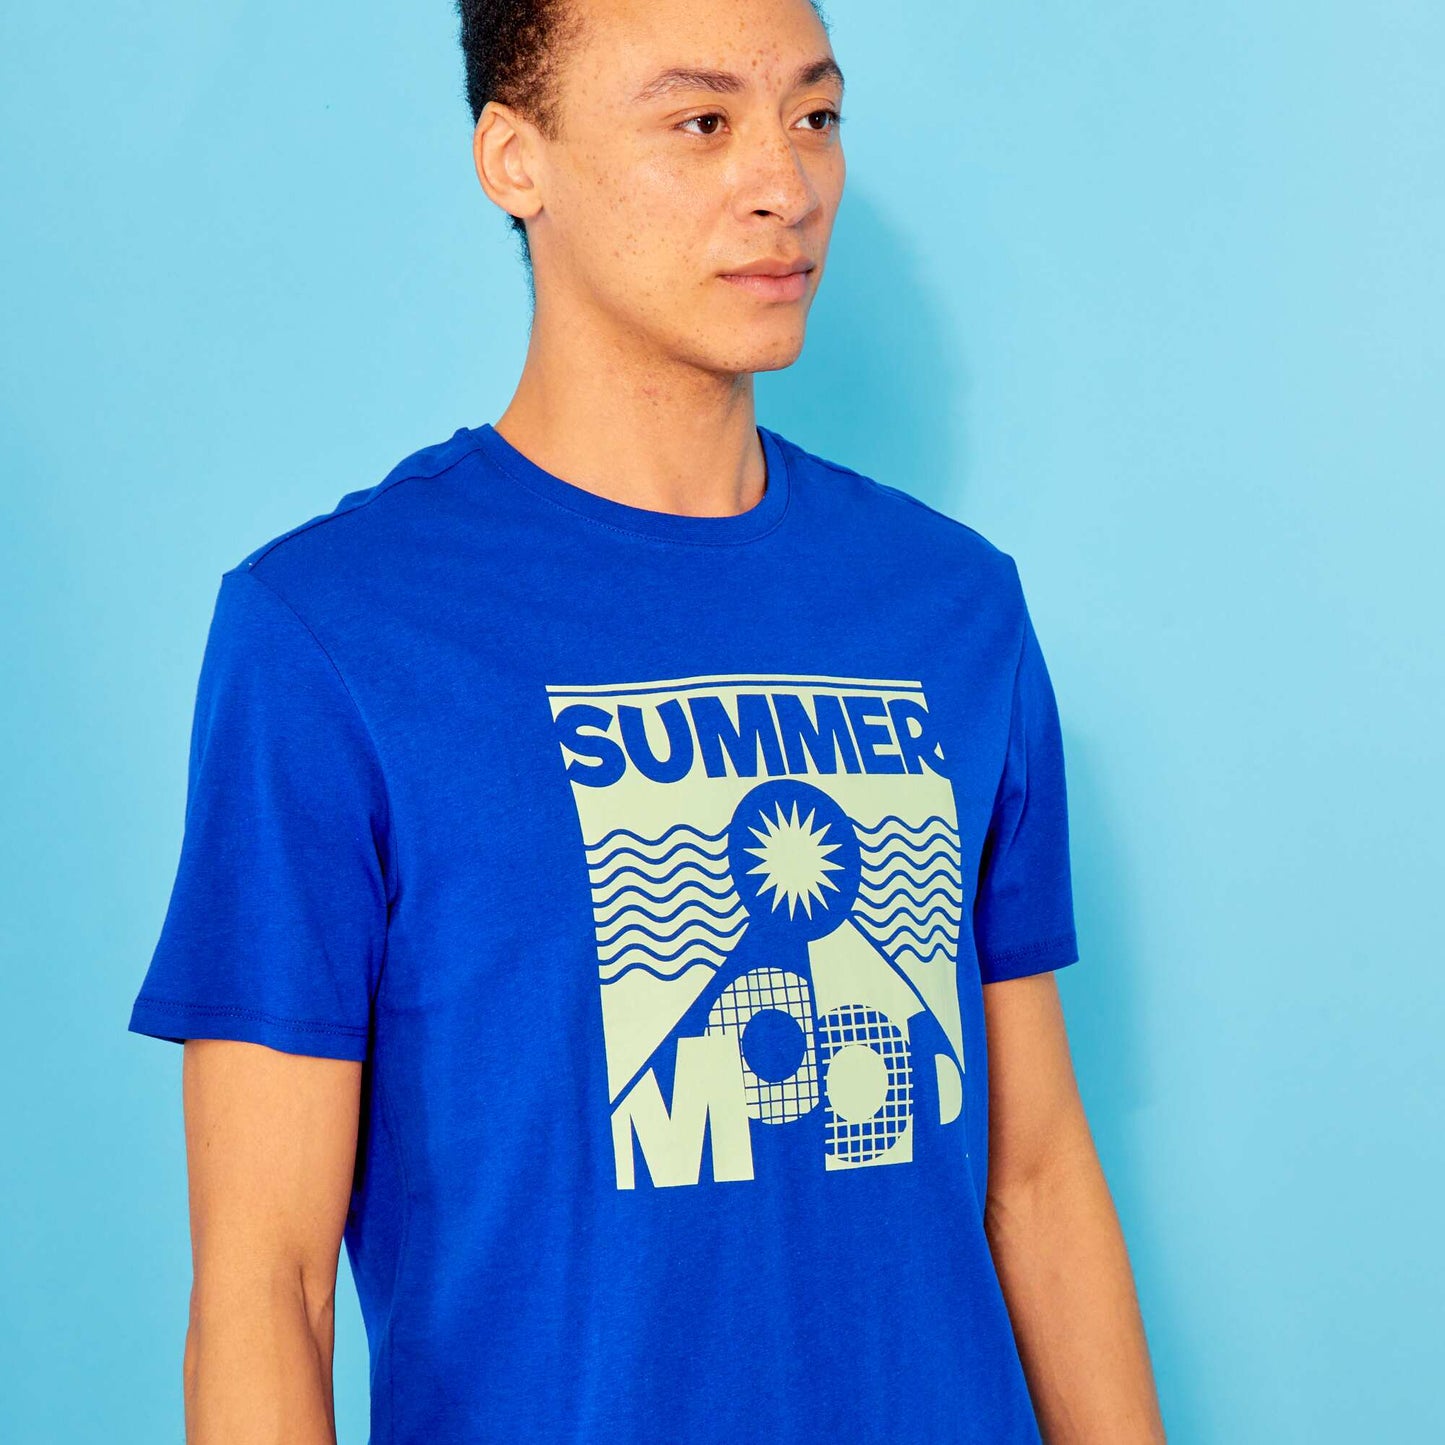 T-shirt en jersey avec imprim Bleu